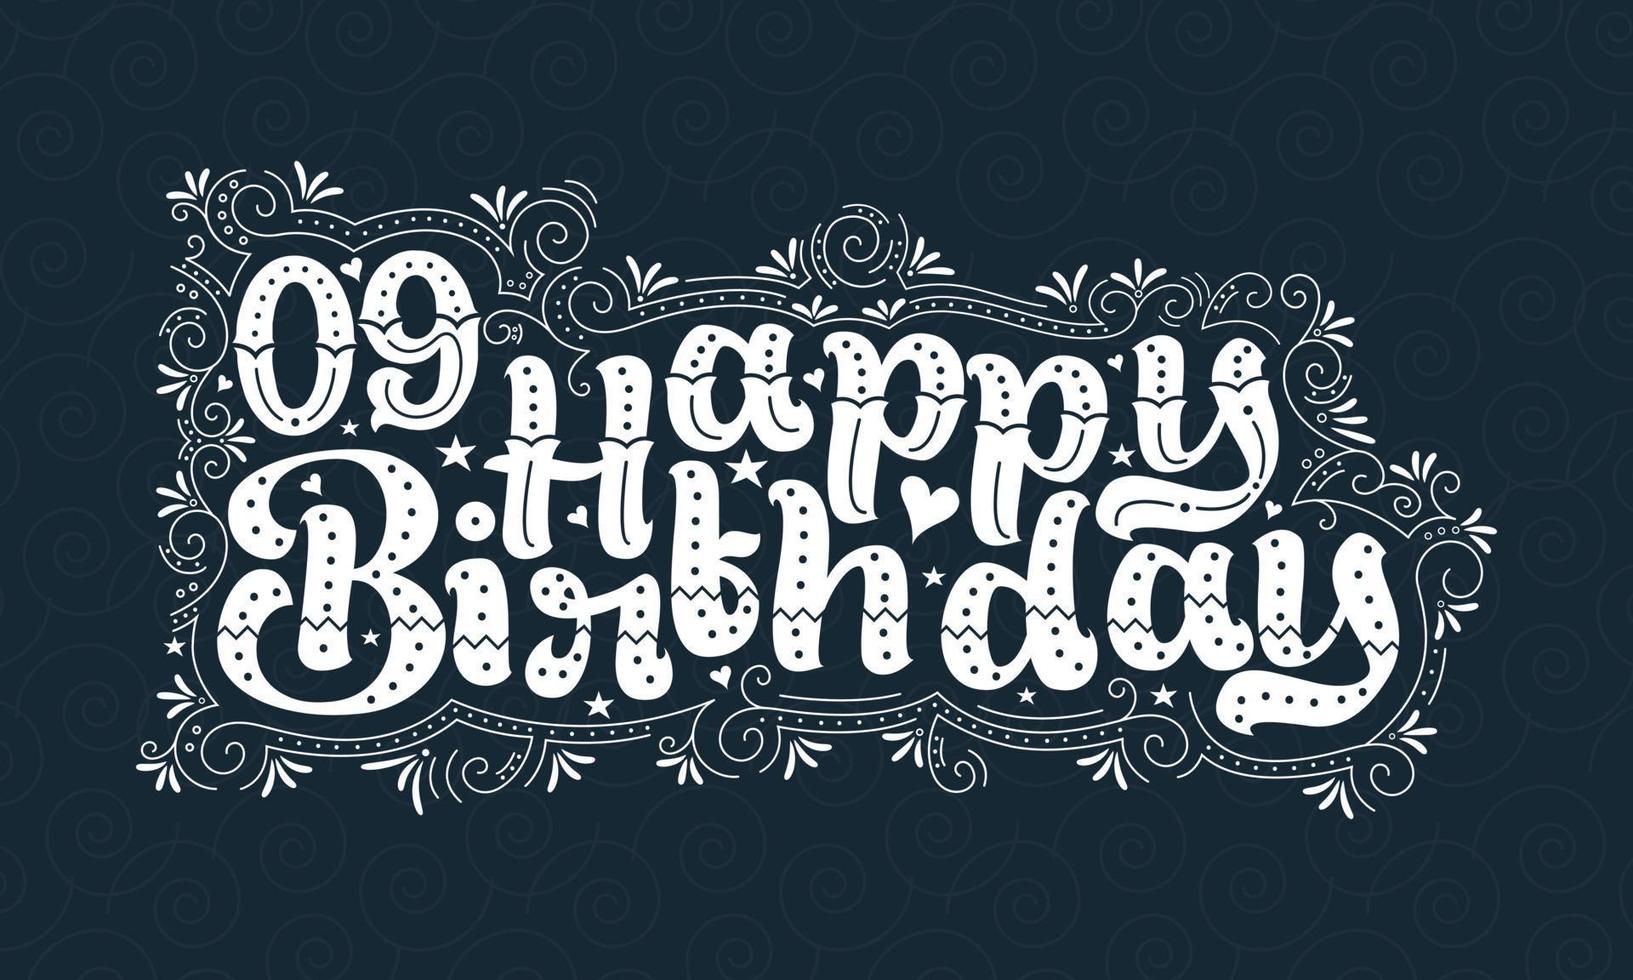 9e gelukkige verjaardag belettering, 9 jaar verjaardag mooi typografieontwerp met stippen, lijnen en bladeren. vector